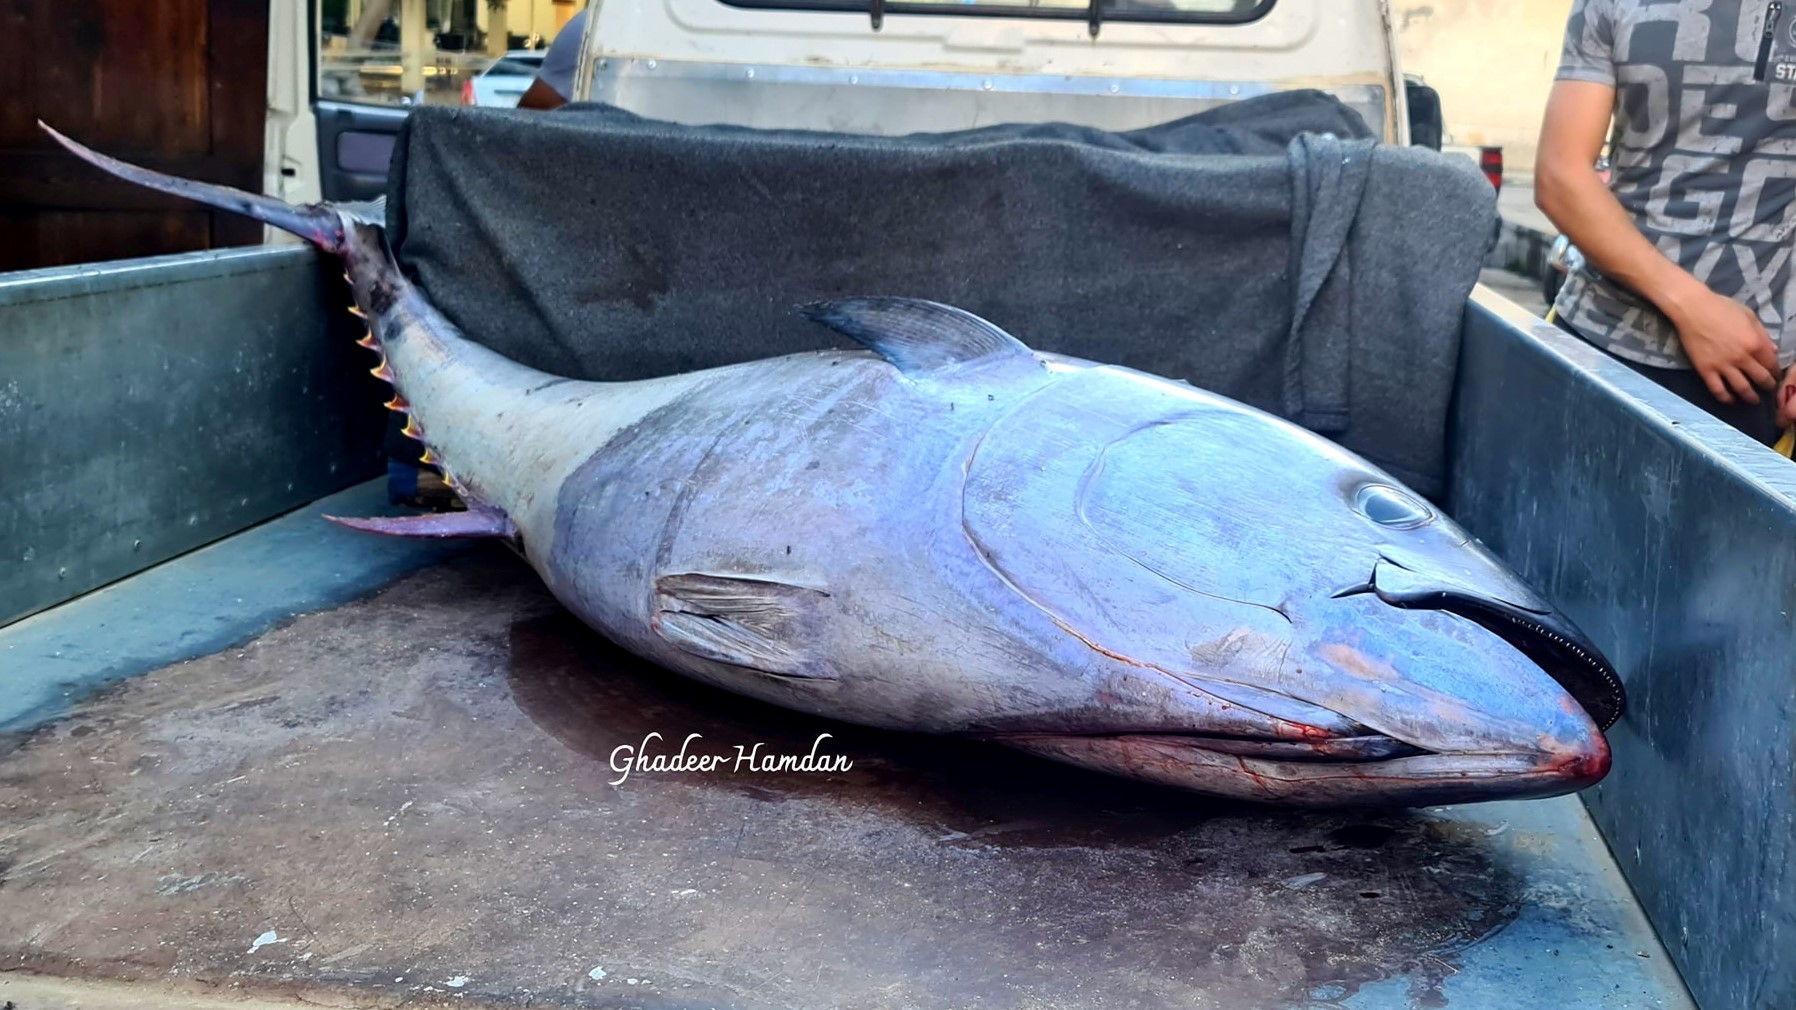 العثور على سمكة نادرة وغامـ.ـضة في مدينة سوريا والسلطات تتحـ.ـرك للتحقق منها (صور)